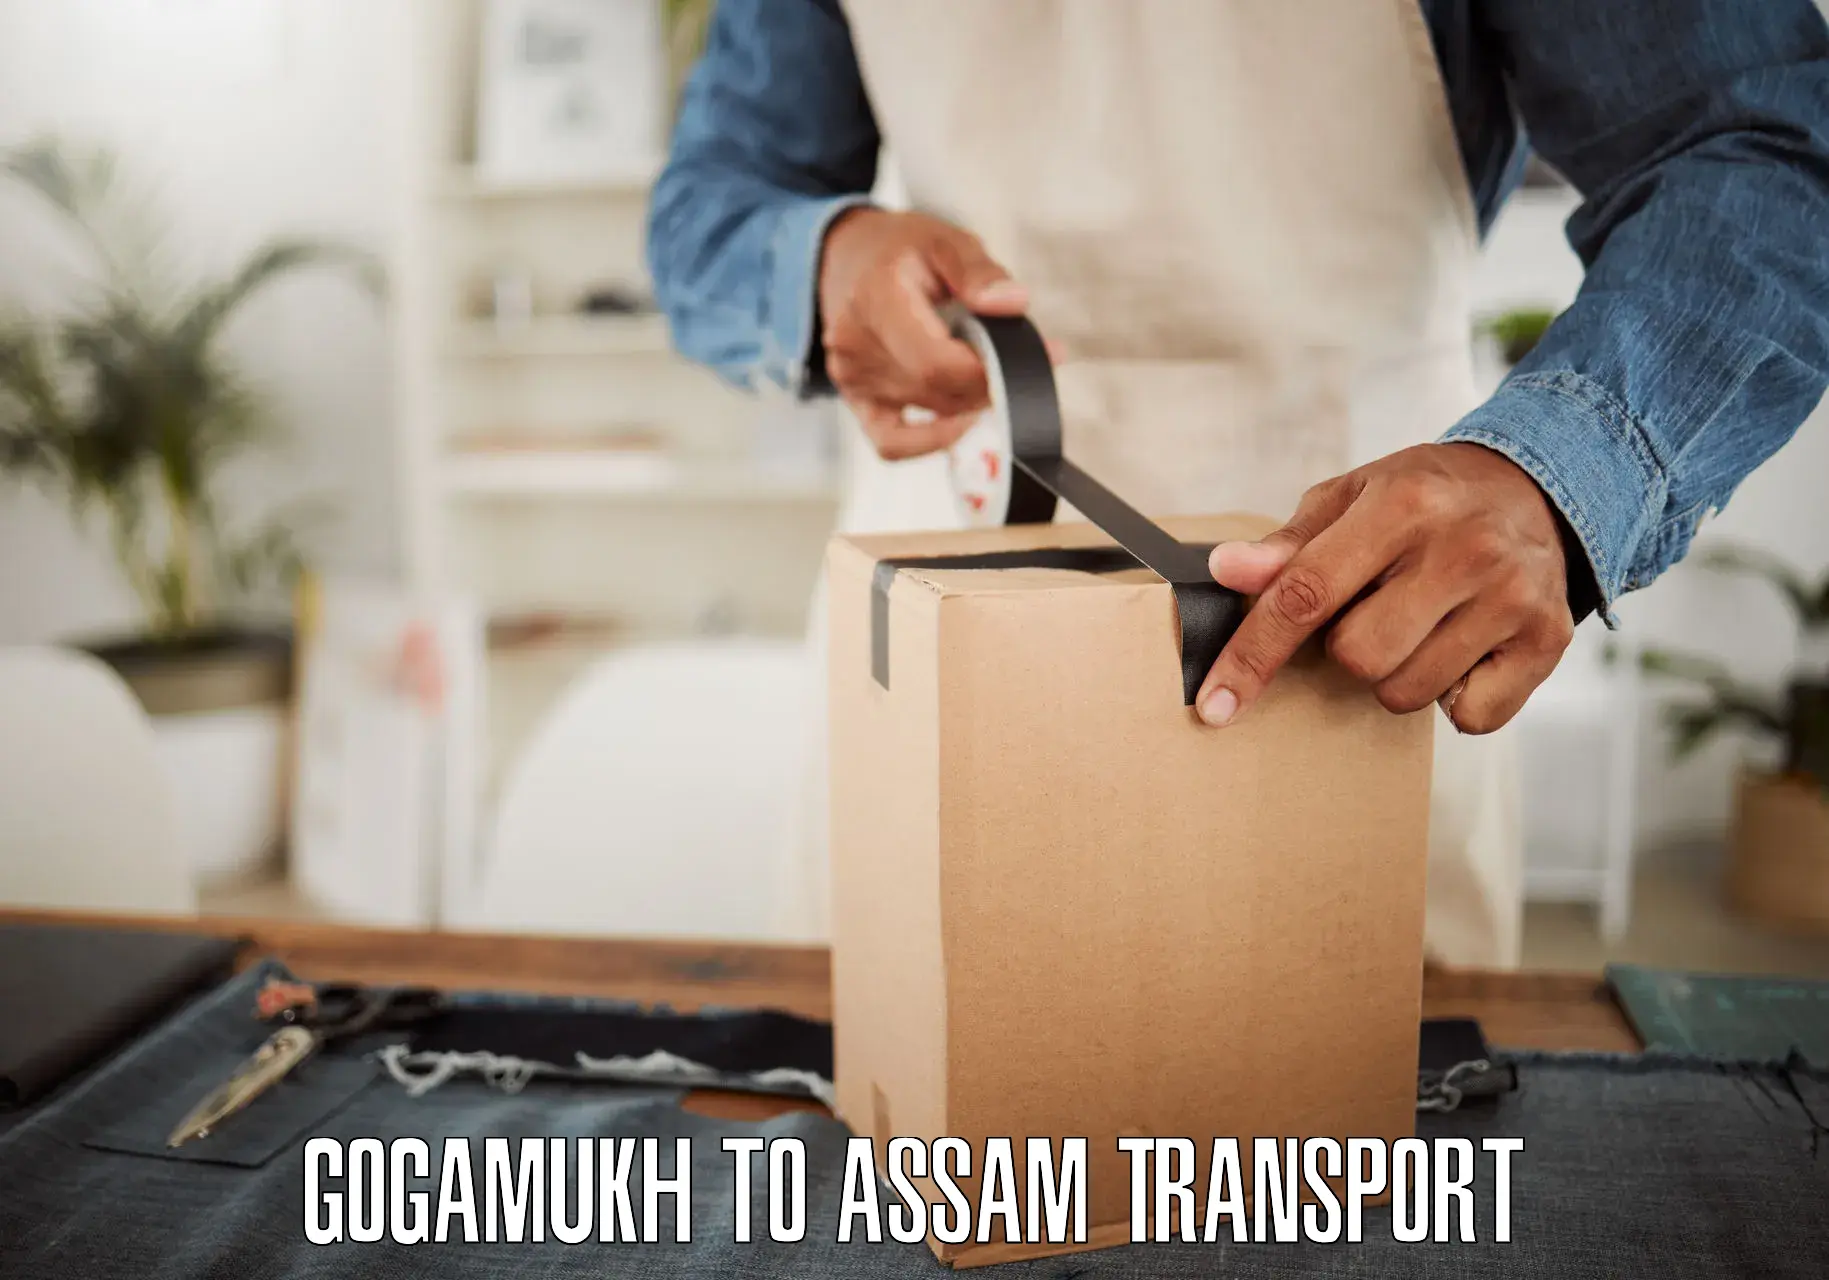 Scooty transport charges Gogamukh to Baksha Bodoland